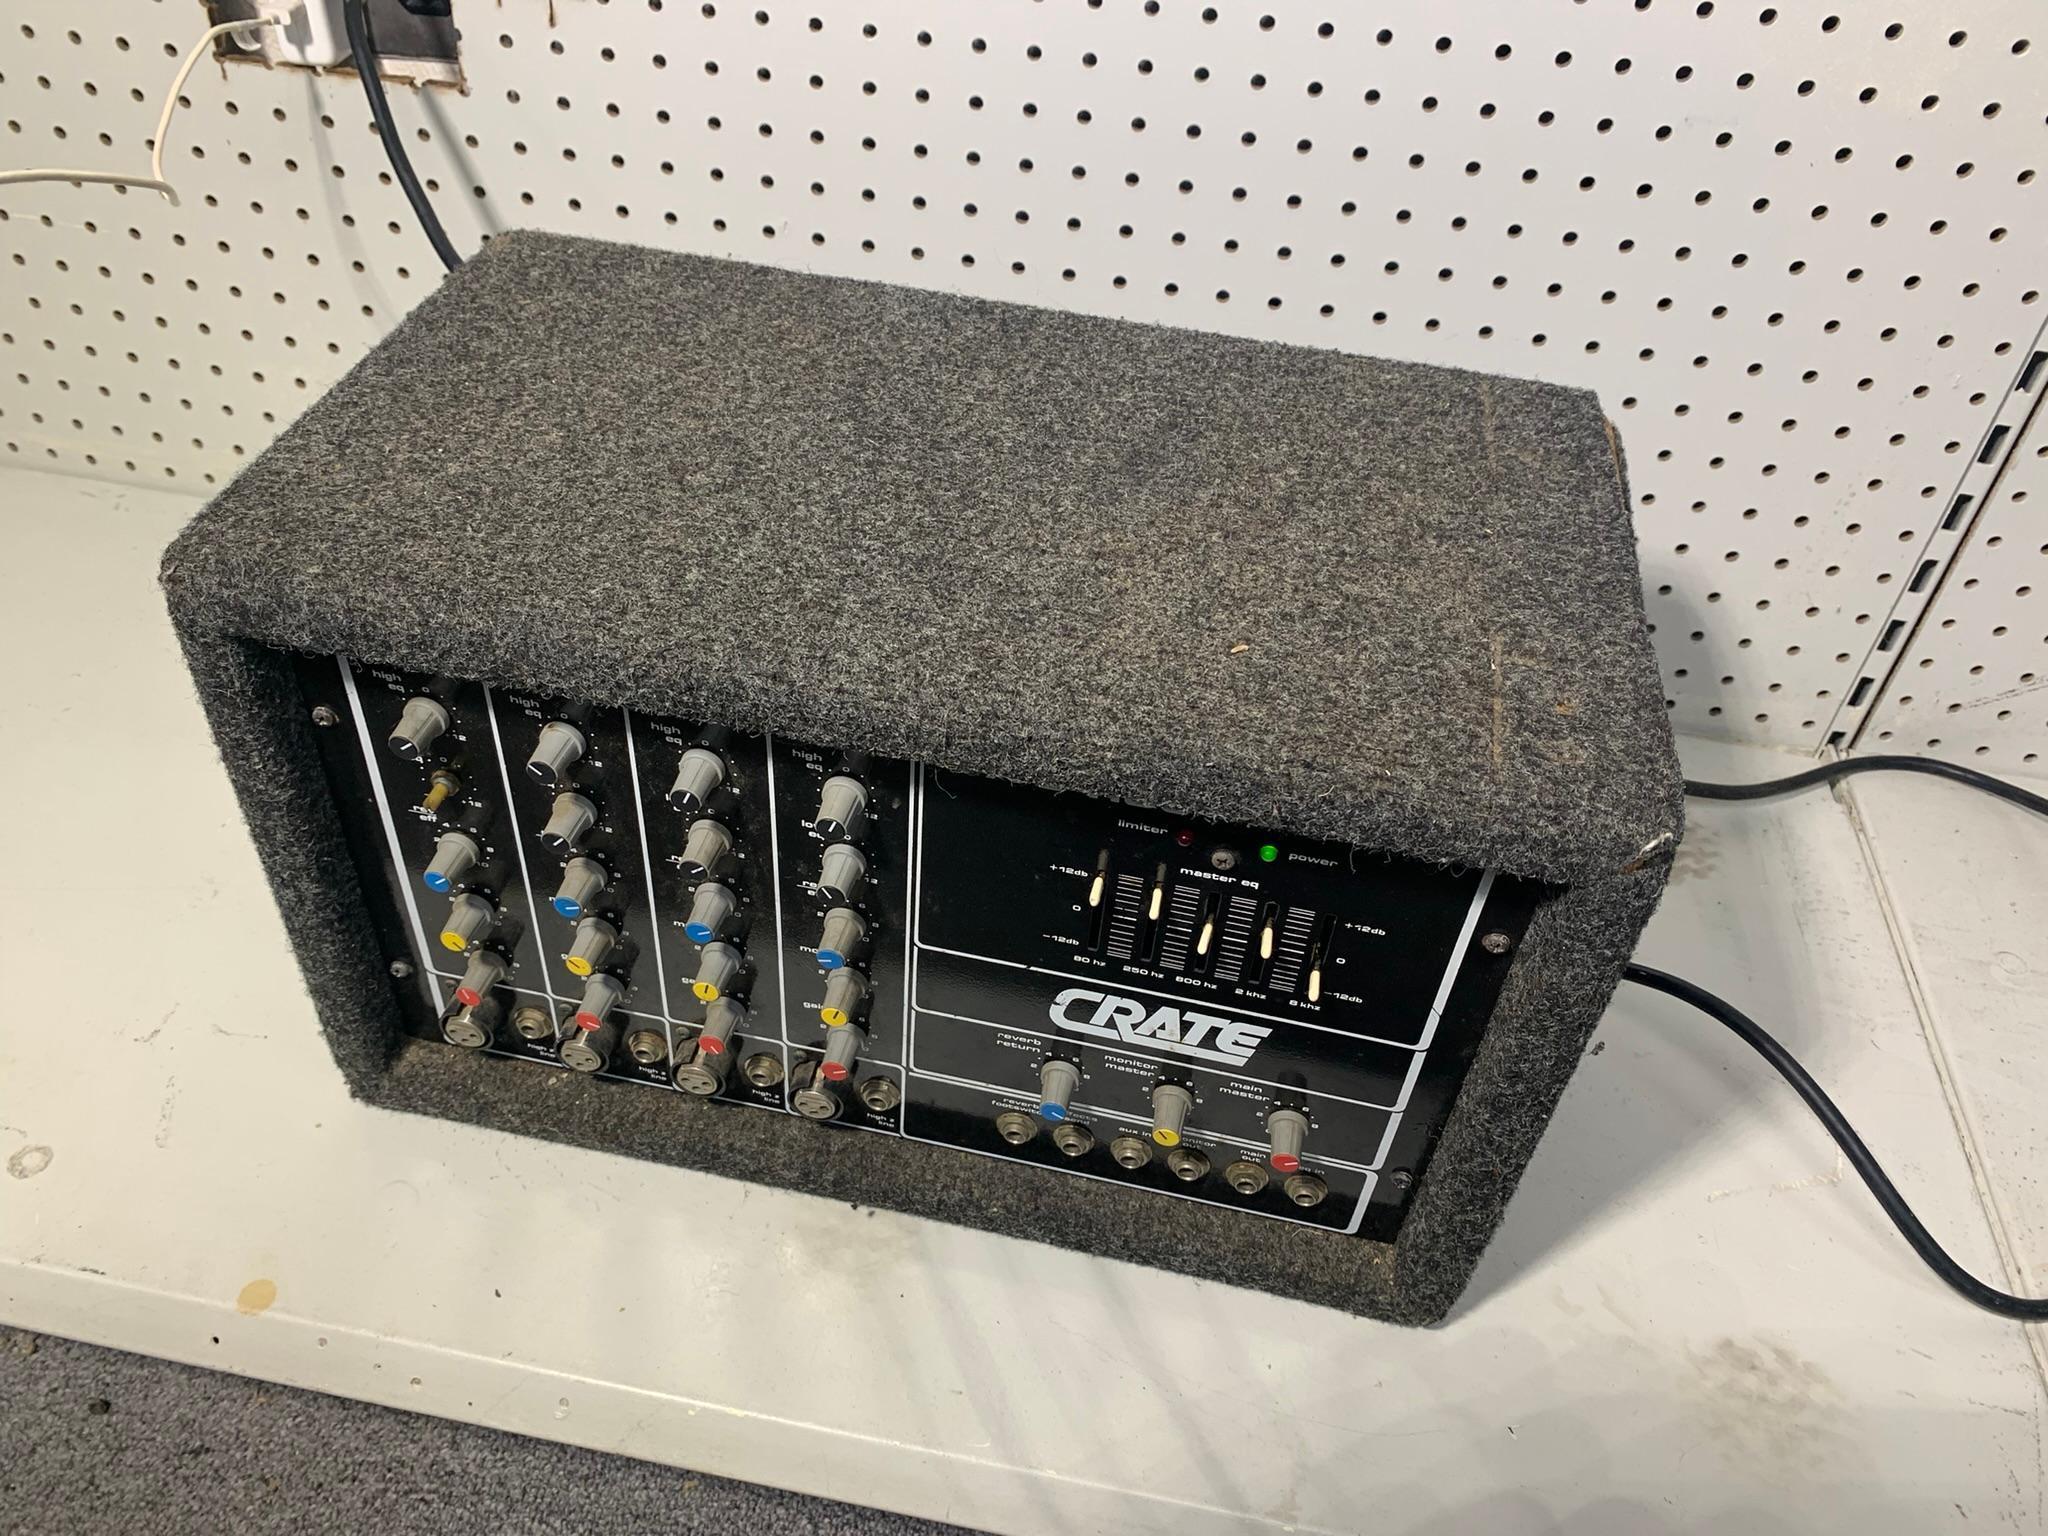 Crate PA-B4150 Mix Amp